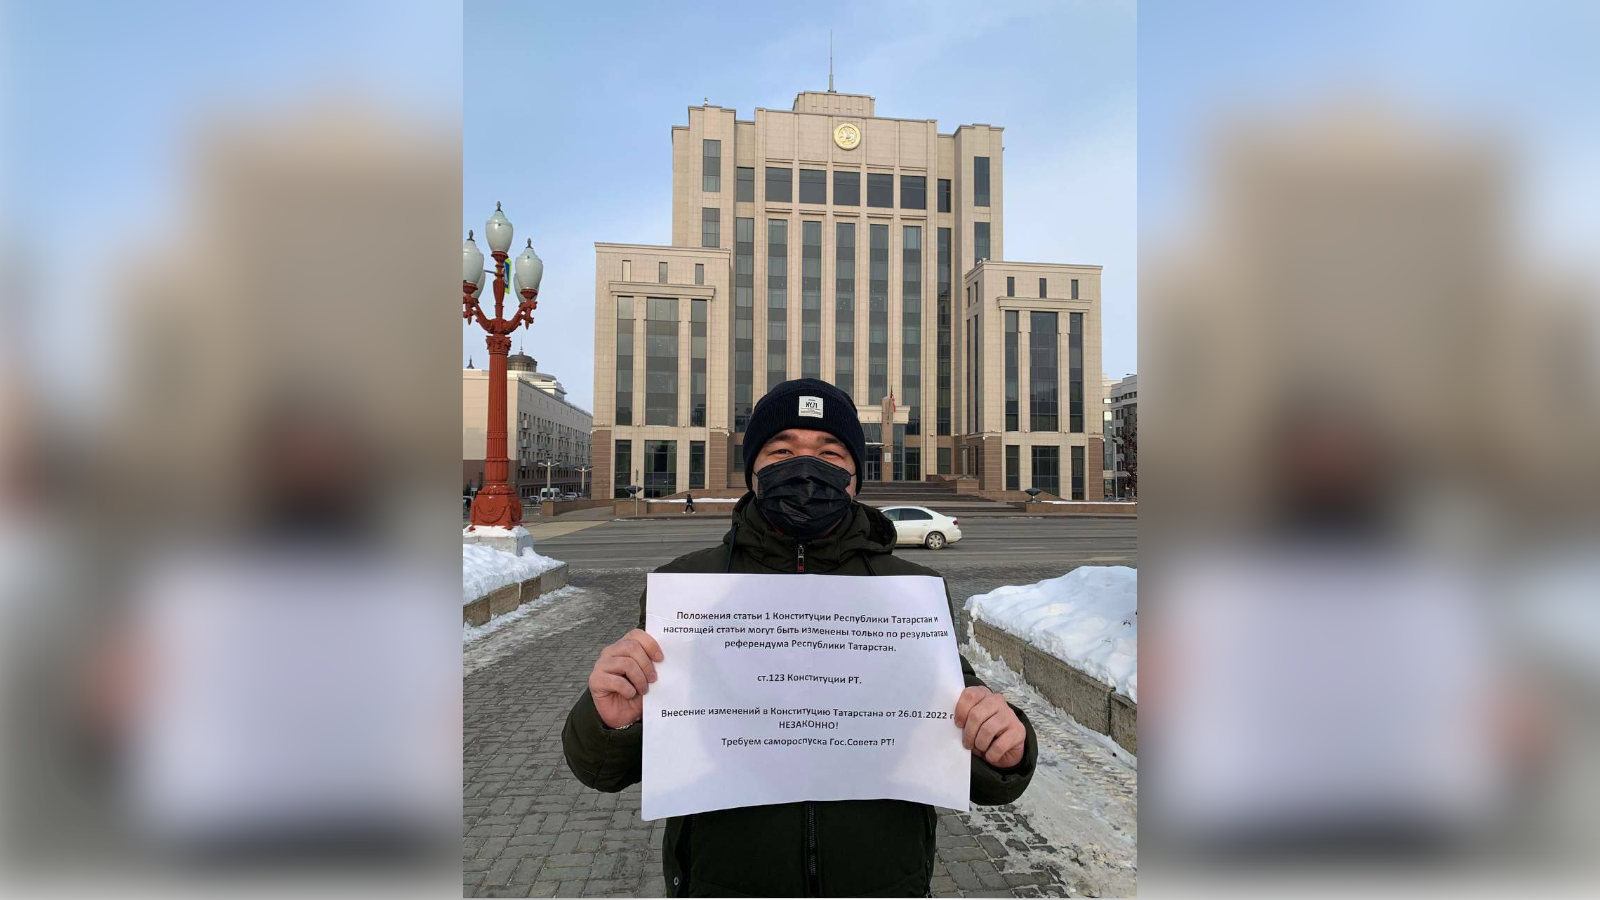 Heute fand eine Demonstration gegen die Änderungen an der Verfassung von Tatarstan statt